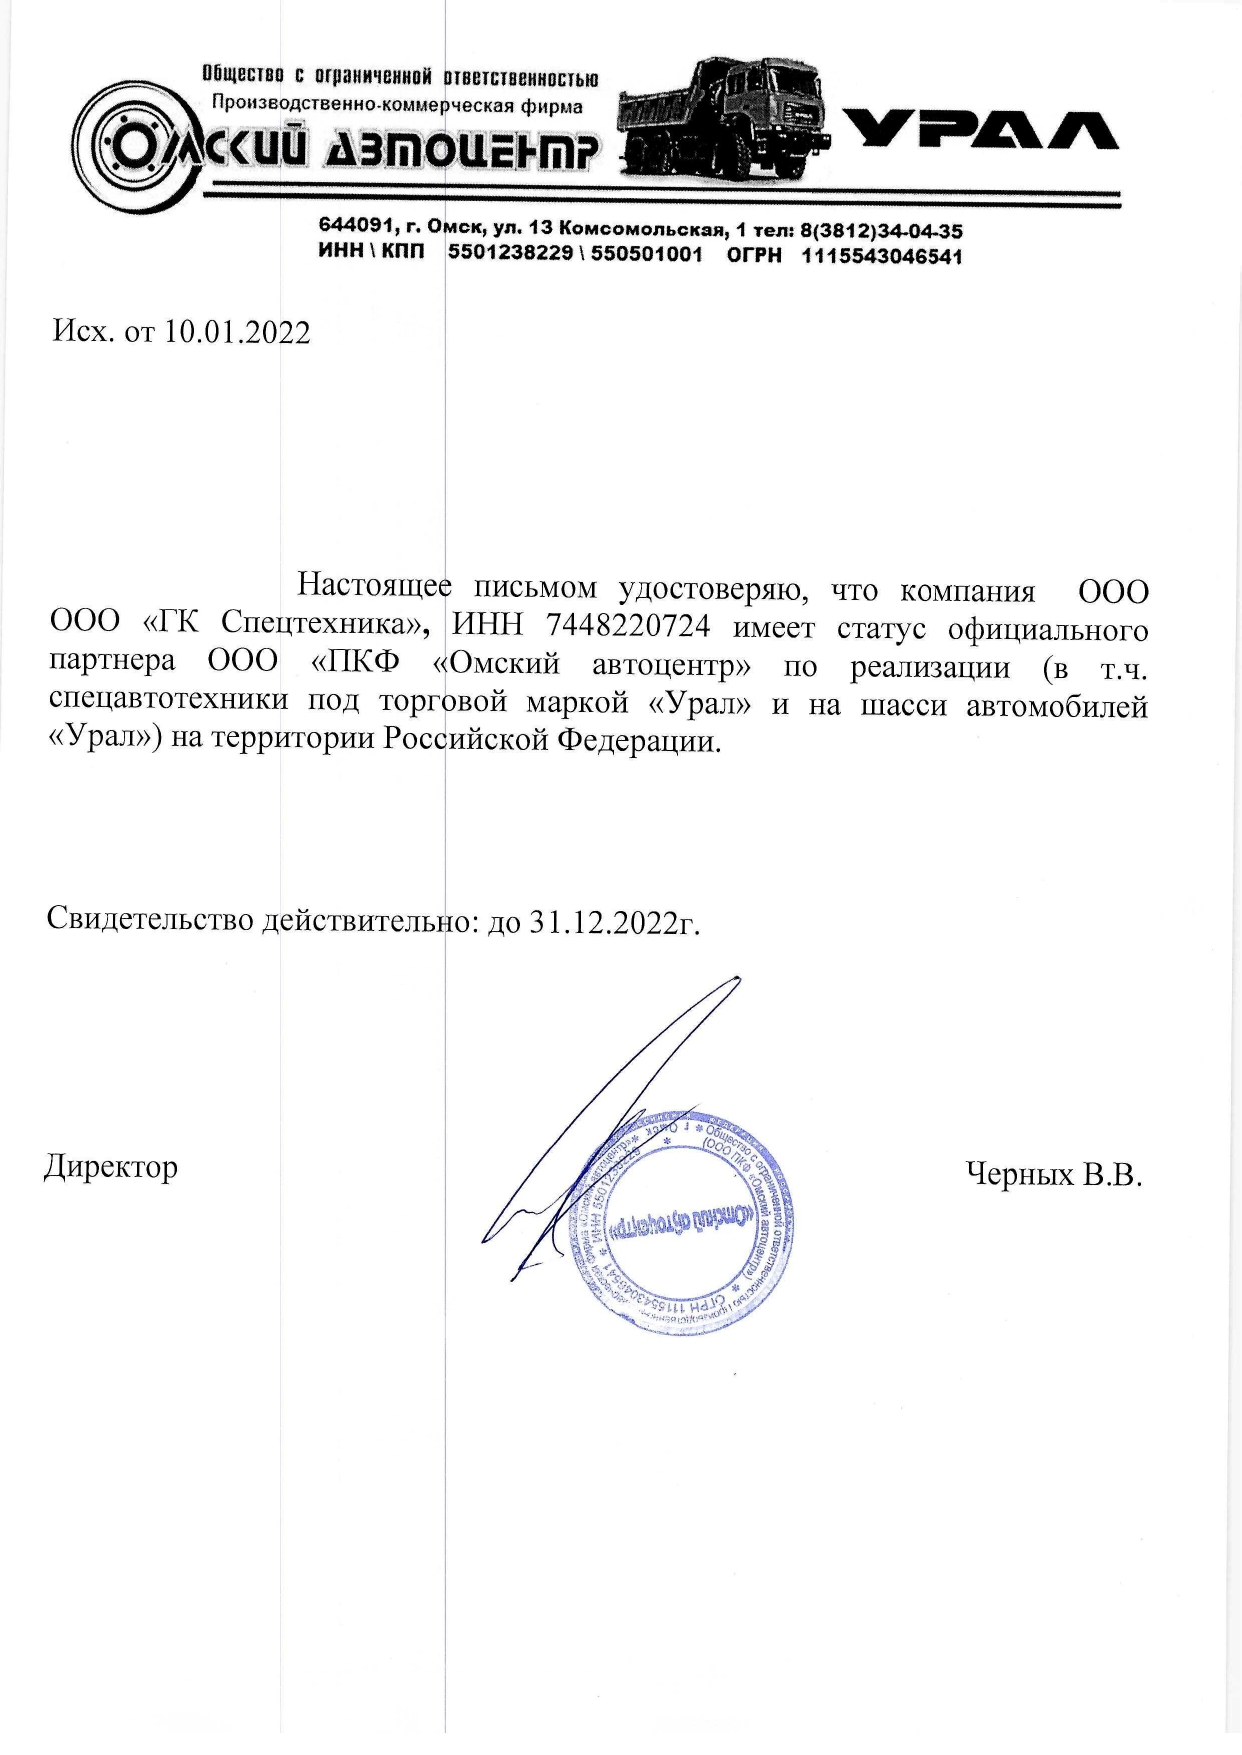 Сертификат дилера «Омский Автоцентр» от 2022 г.